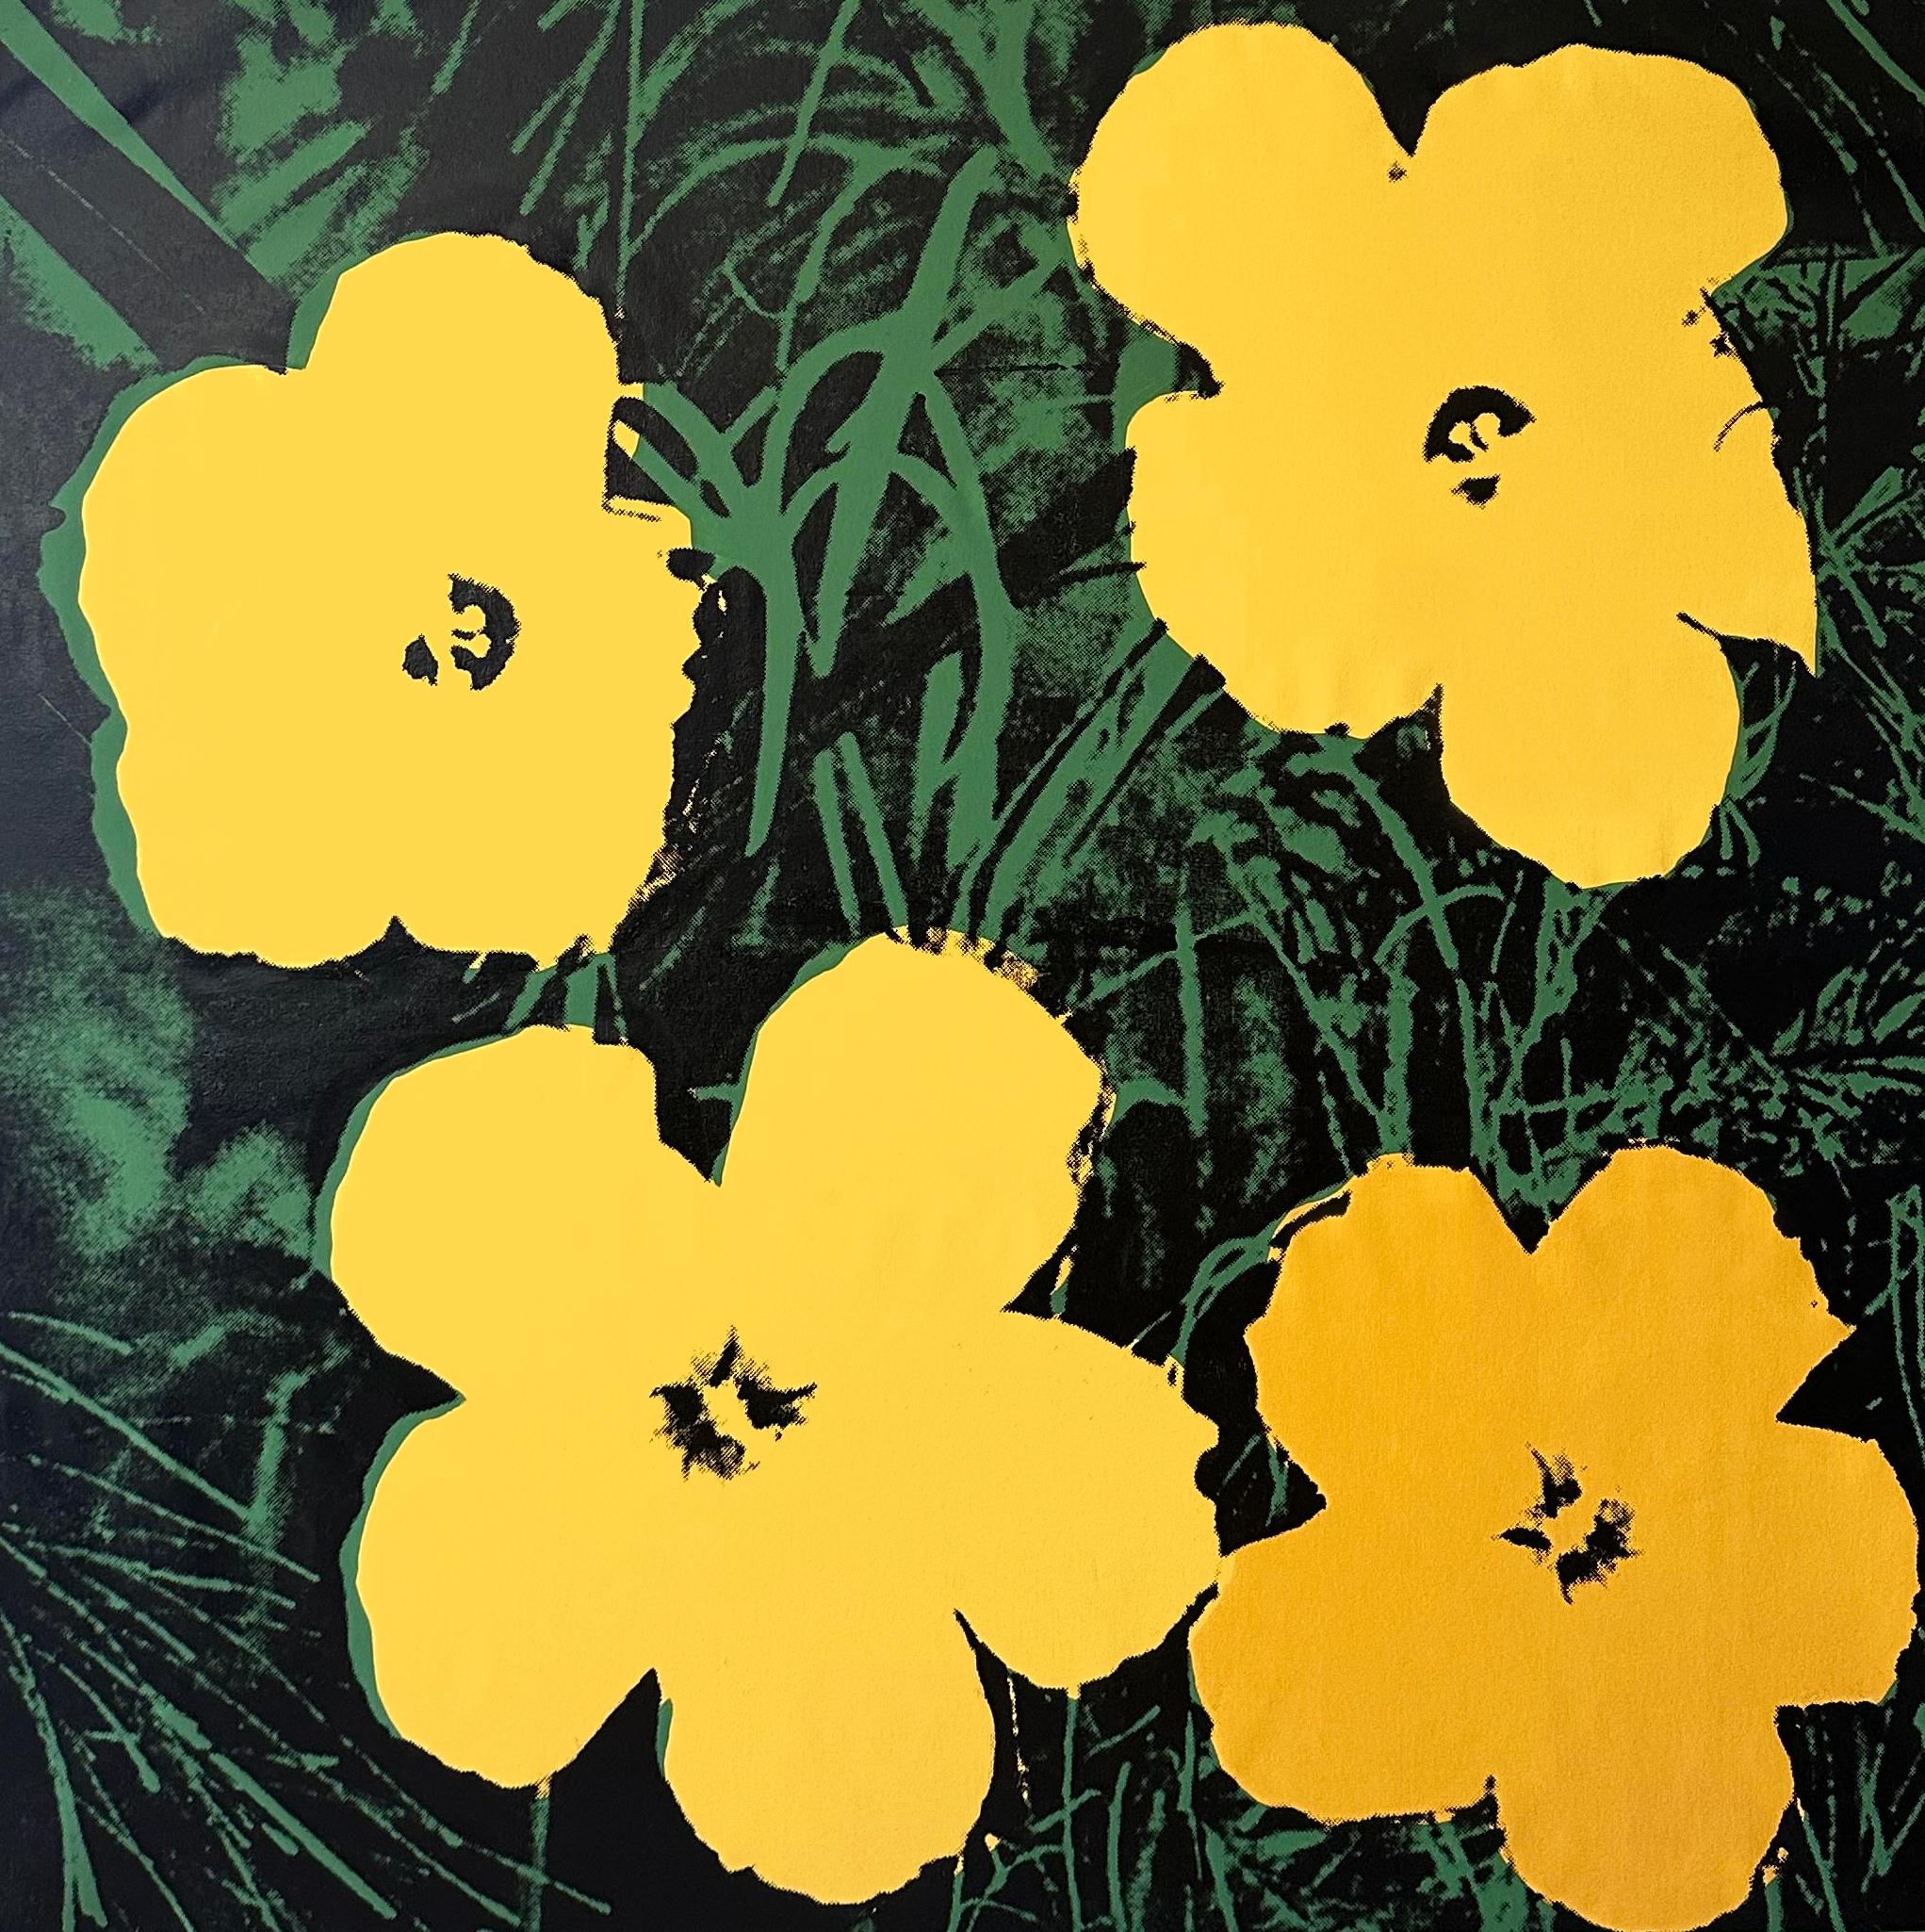 Denied Warhol Flowers, (Jaune) Peinture sérigraphiée de Charles Lutz
Sérigraphie et acrylique sur toile avec le cachet Denied du Andy Warhol Art Authentication Board.
48 x 48" pouces
2008

En 2007, la série "Warhol Denied" de Gaines a attiré